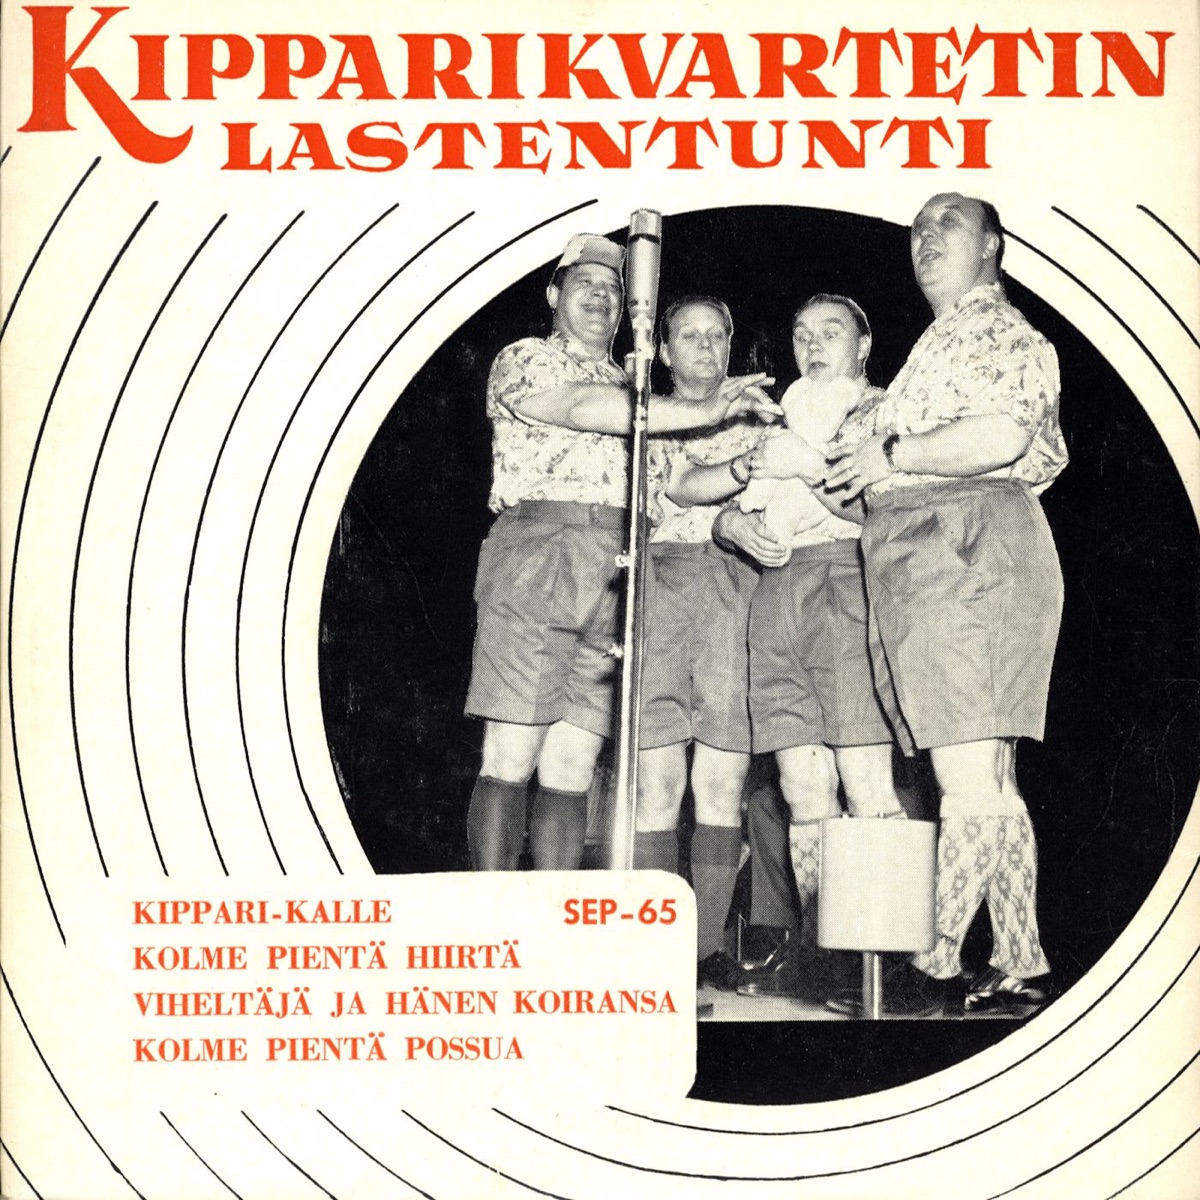 Tässä tullaan - Album by Kipparikvartetti - Apple Music